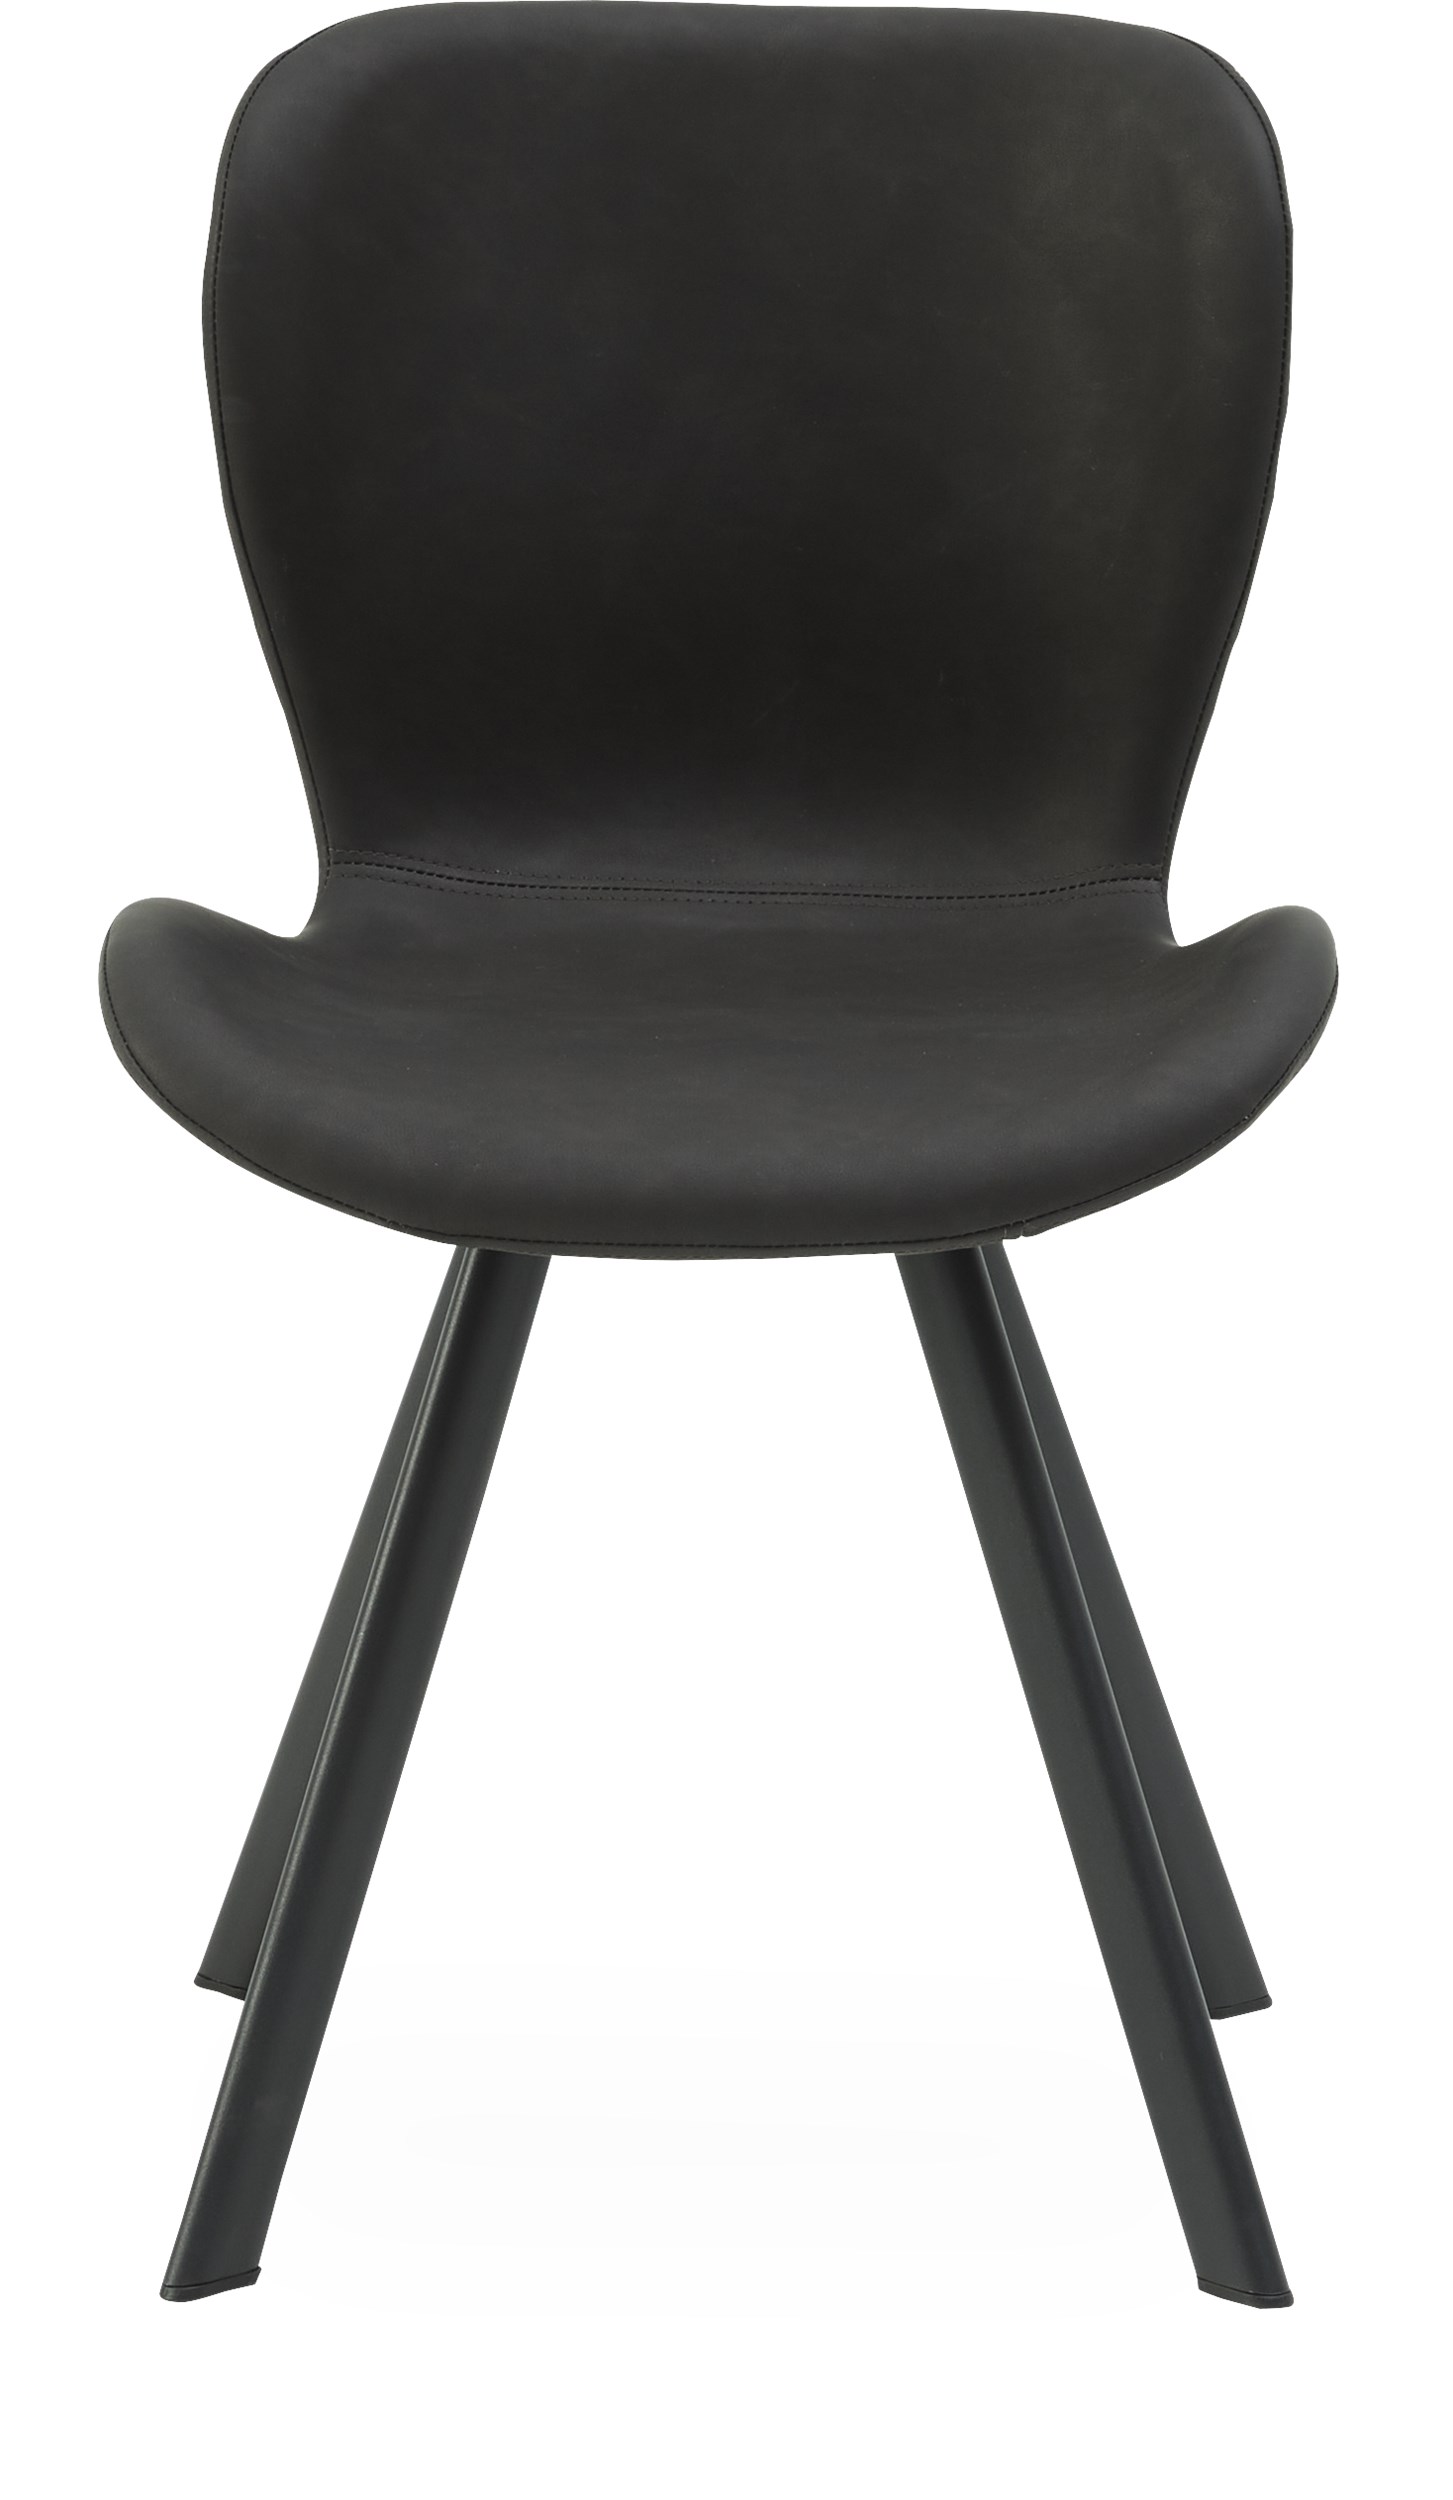 Ally Spisebordsstol - Moccafarvet kunstlæder og ben i sort pulverlakeret metal